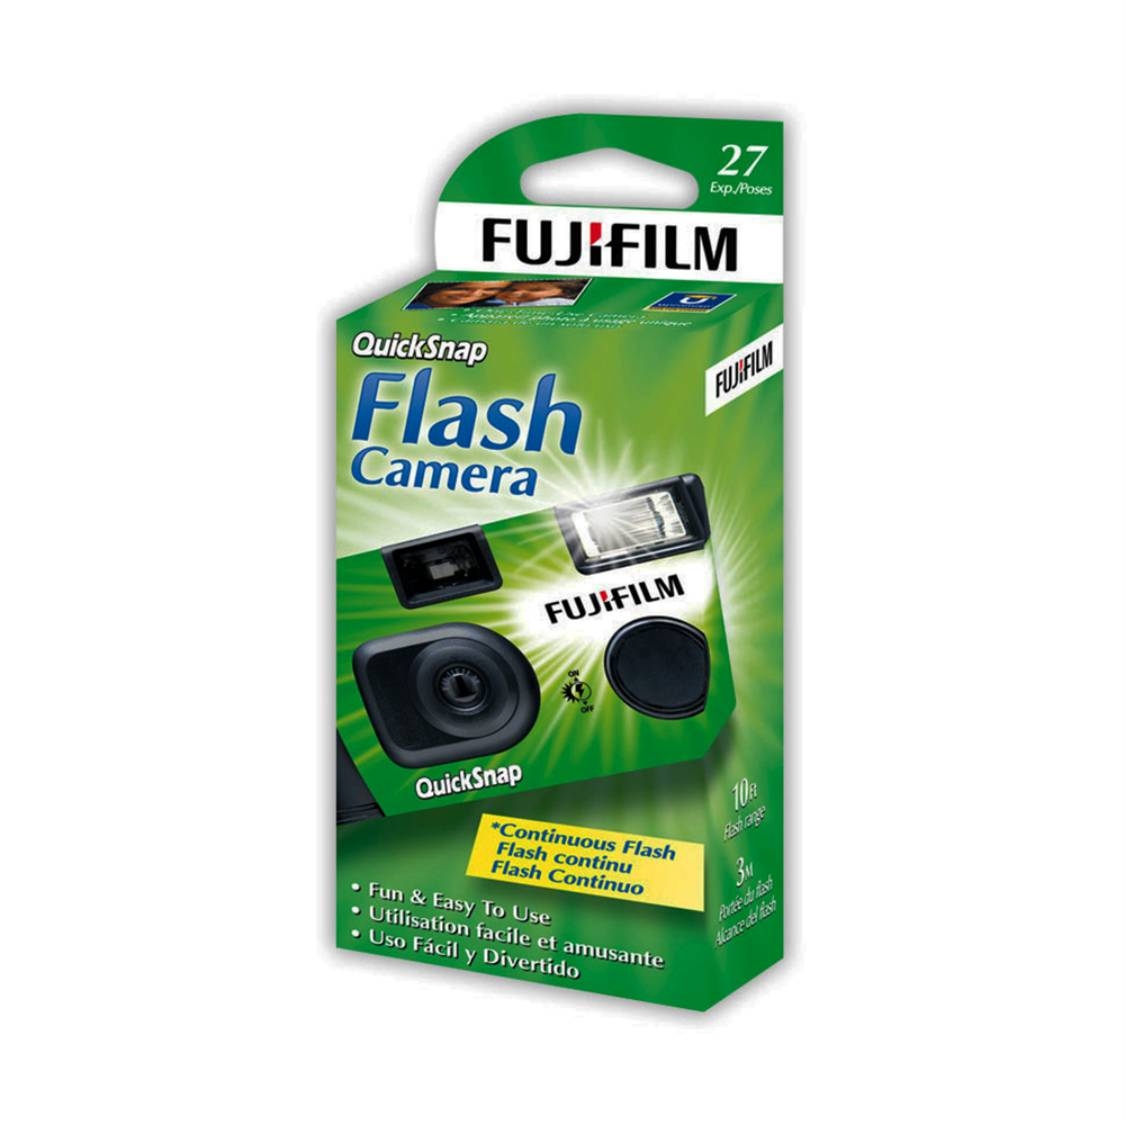 FUJIFILM QuickSnap Flash 400 35mm Disposable Camera (27 Exposures)